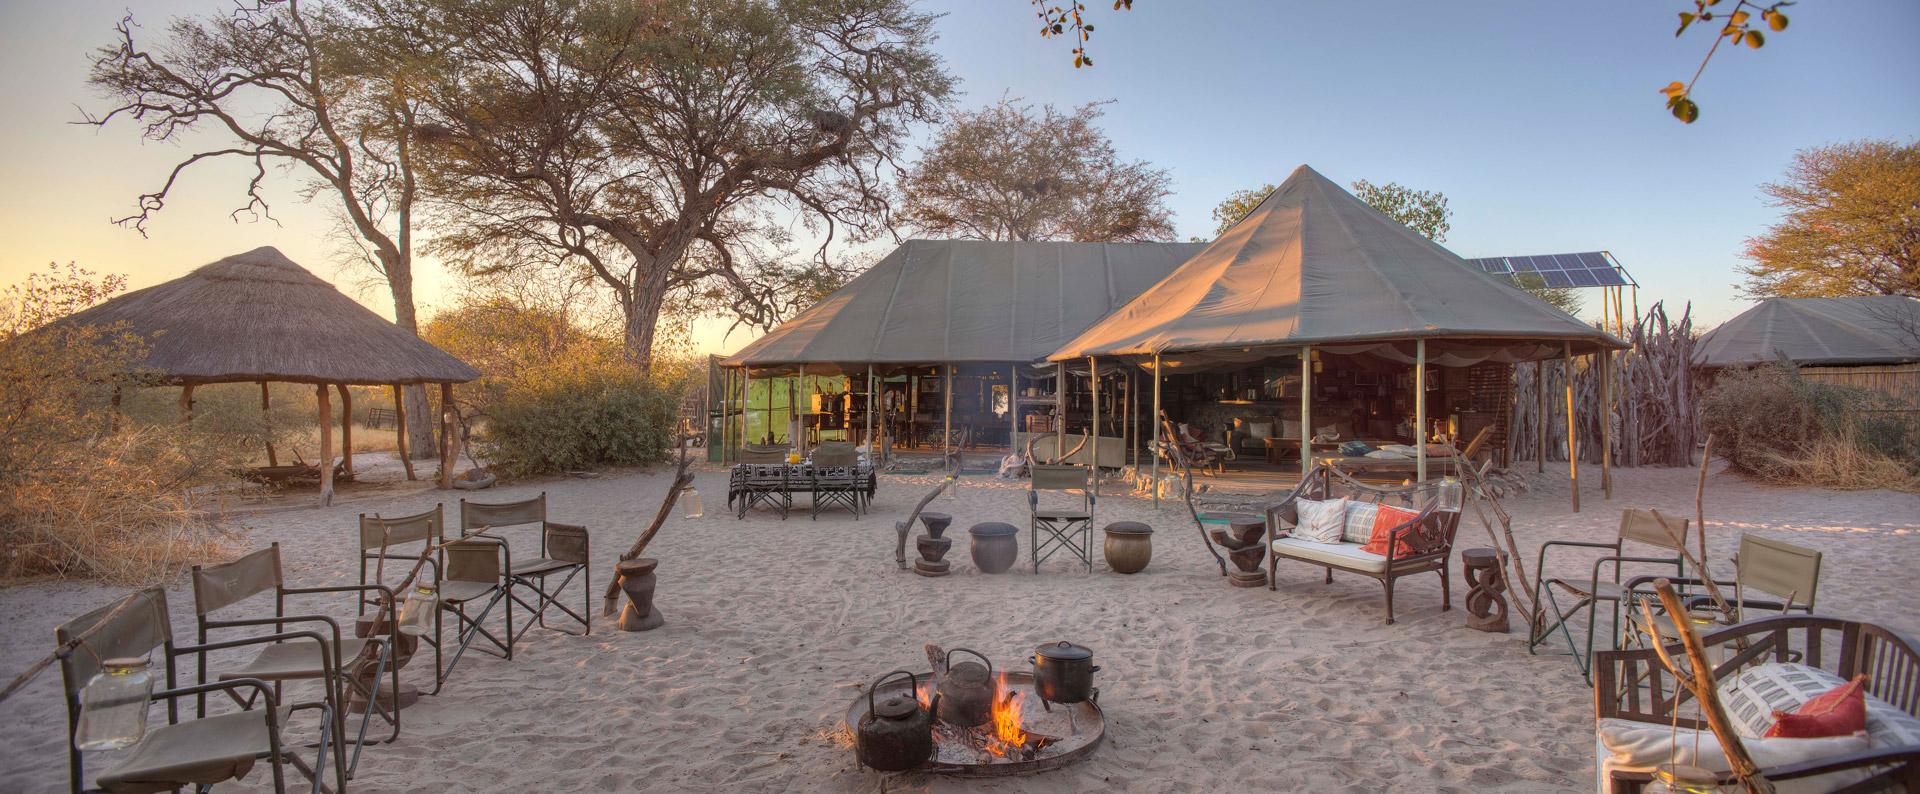 Communal area at Meno a Kwena lodge in Botswana